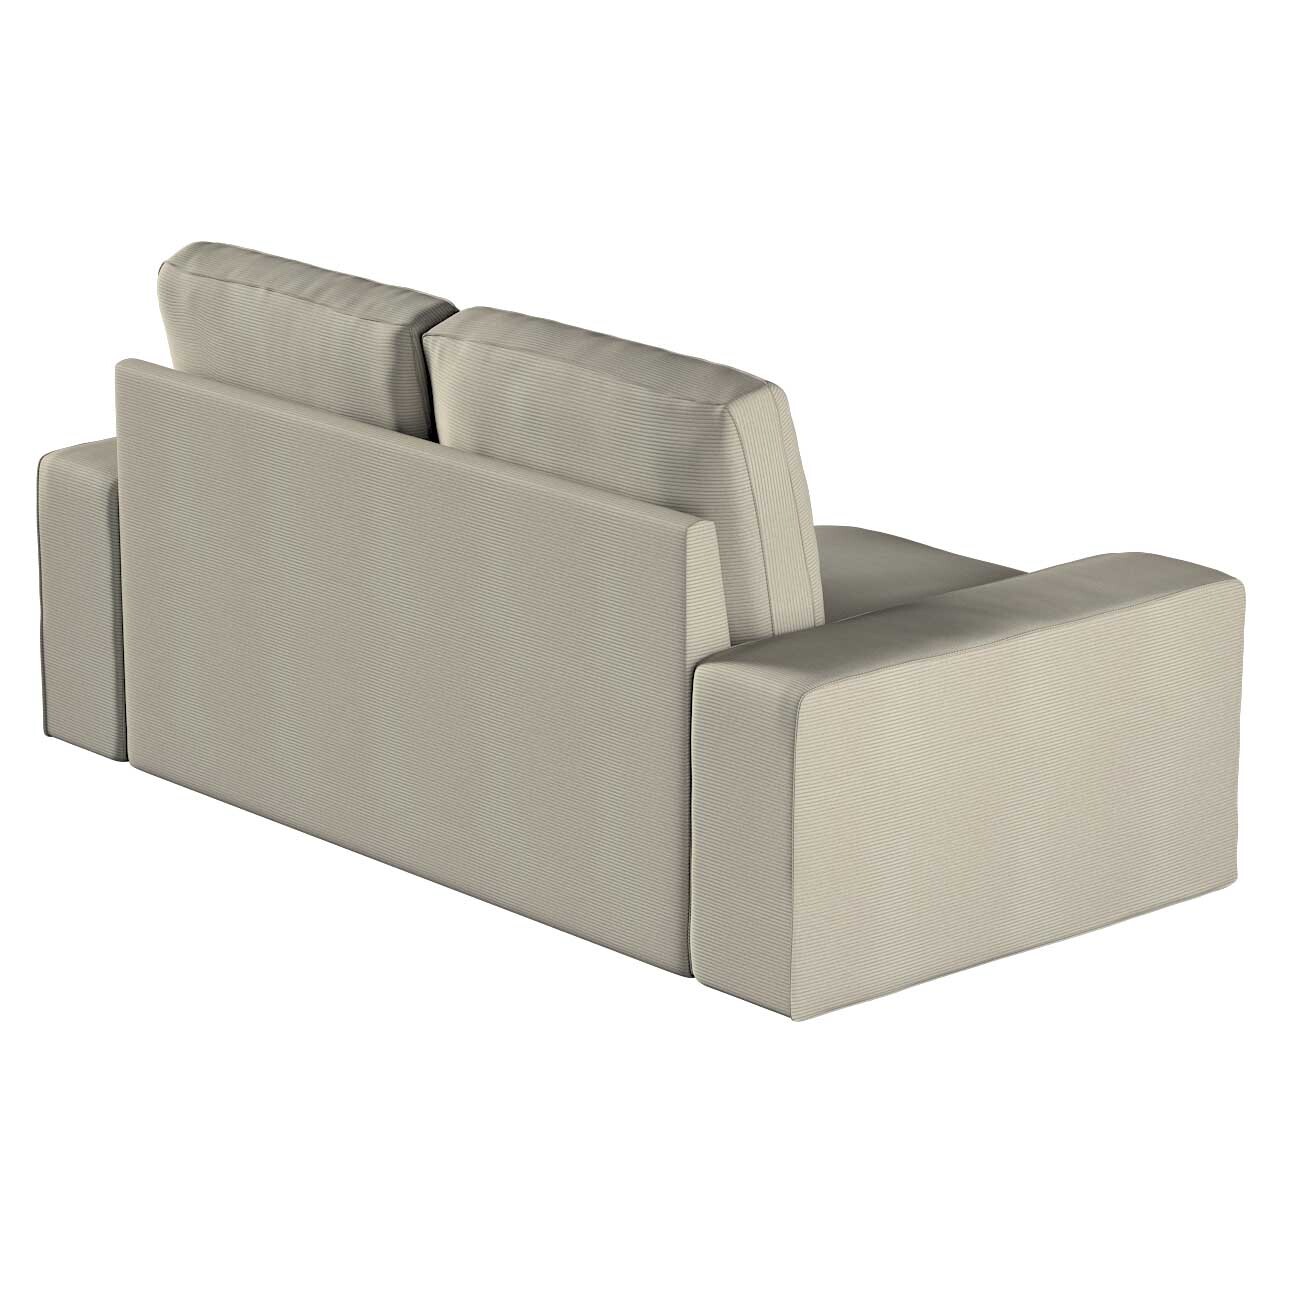 Bezug für Kivik 2-Sitzer Sofa, grau, Bezug für Sofa Kivik 2-Sitzer, Manches günstig online kaufen